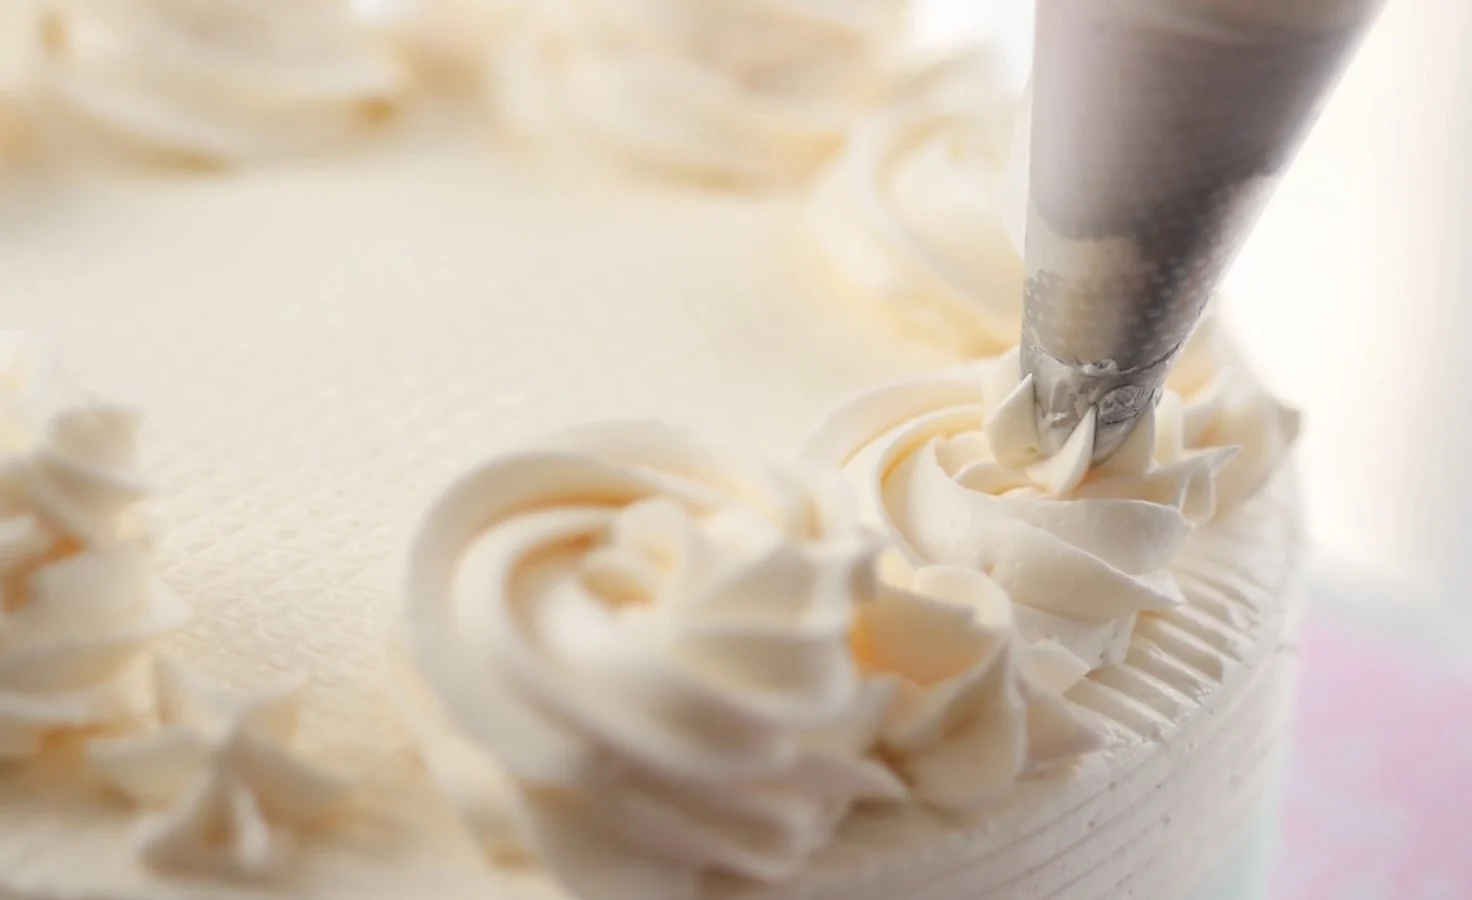 Ev Usulu Yaş Pasta Tarifi Nasıl Yapılır? Malzemeleri ve Yapımı